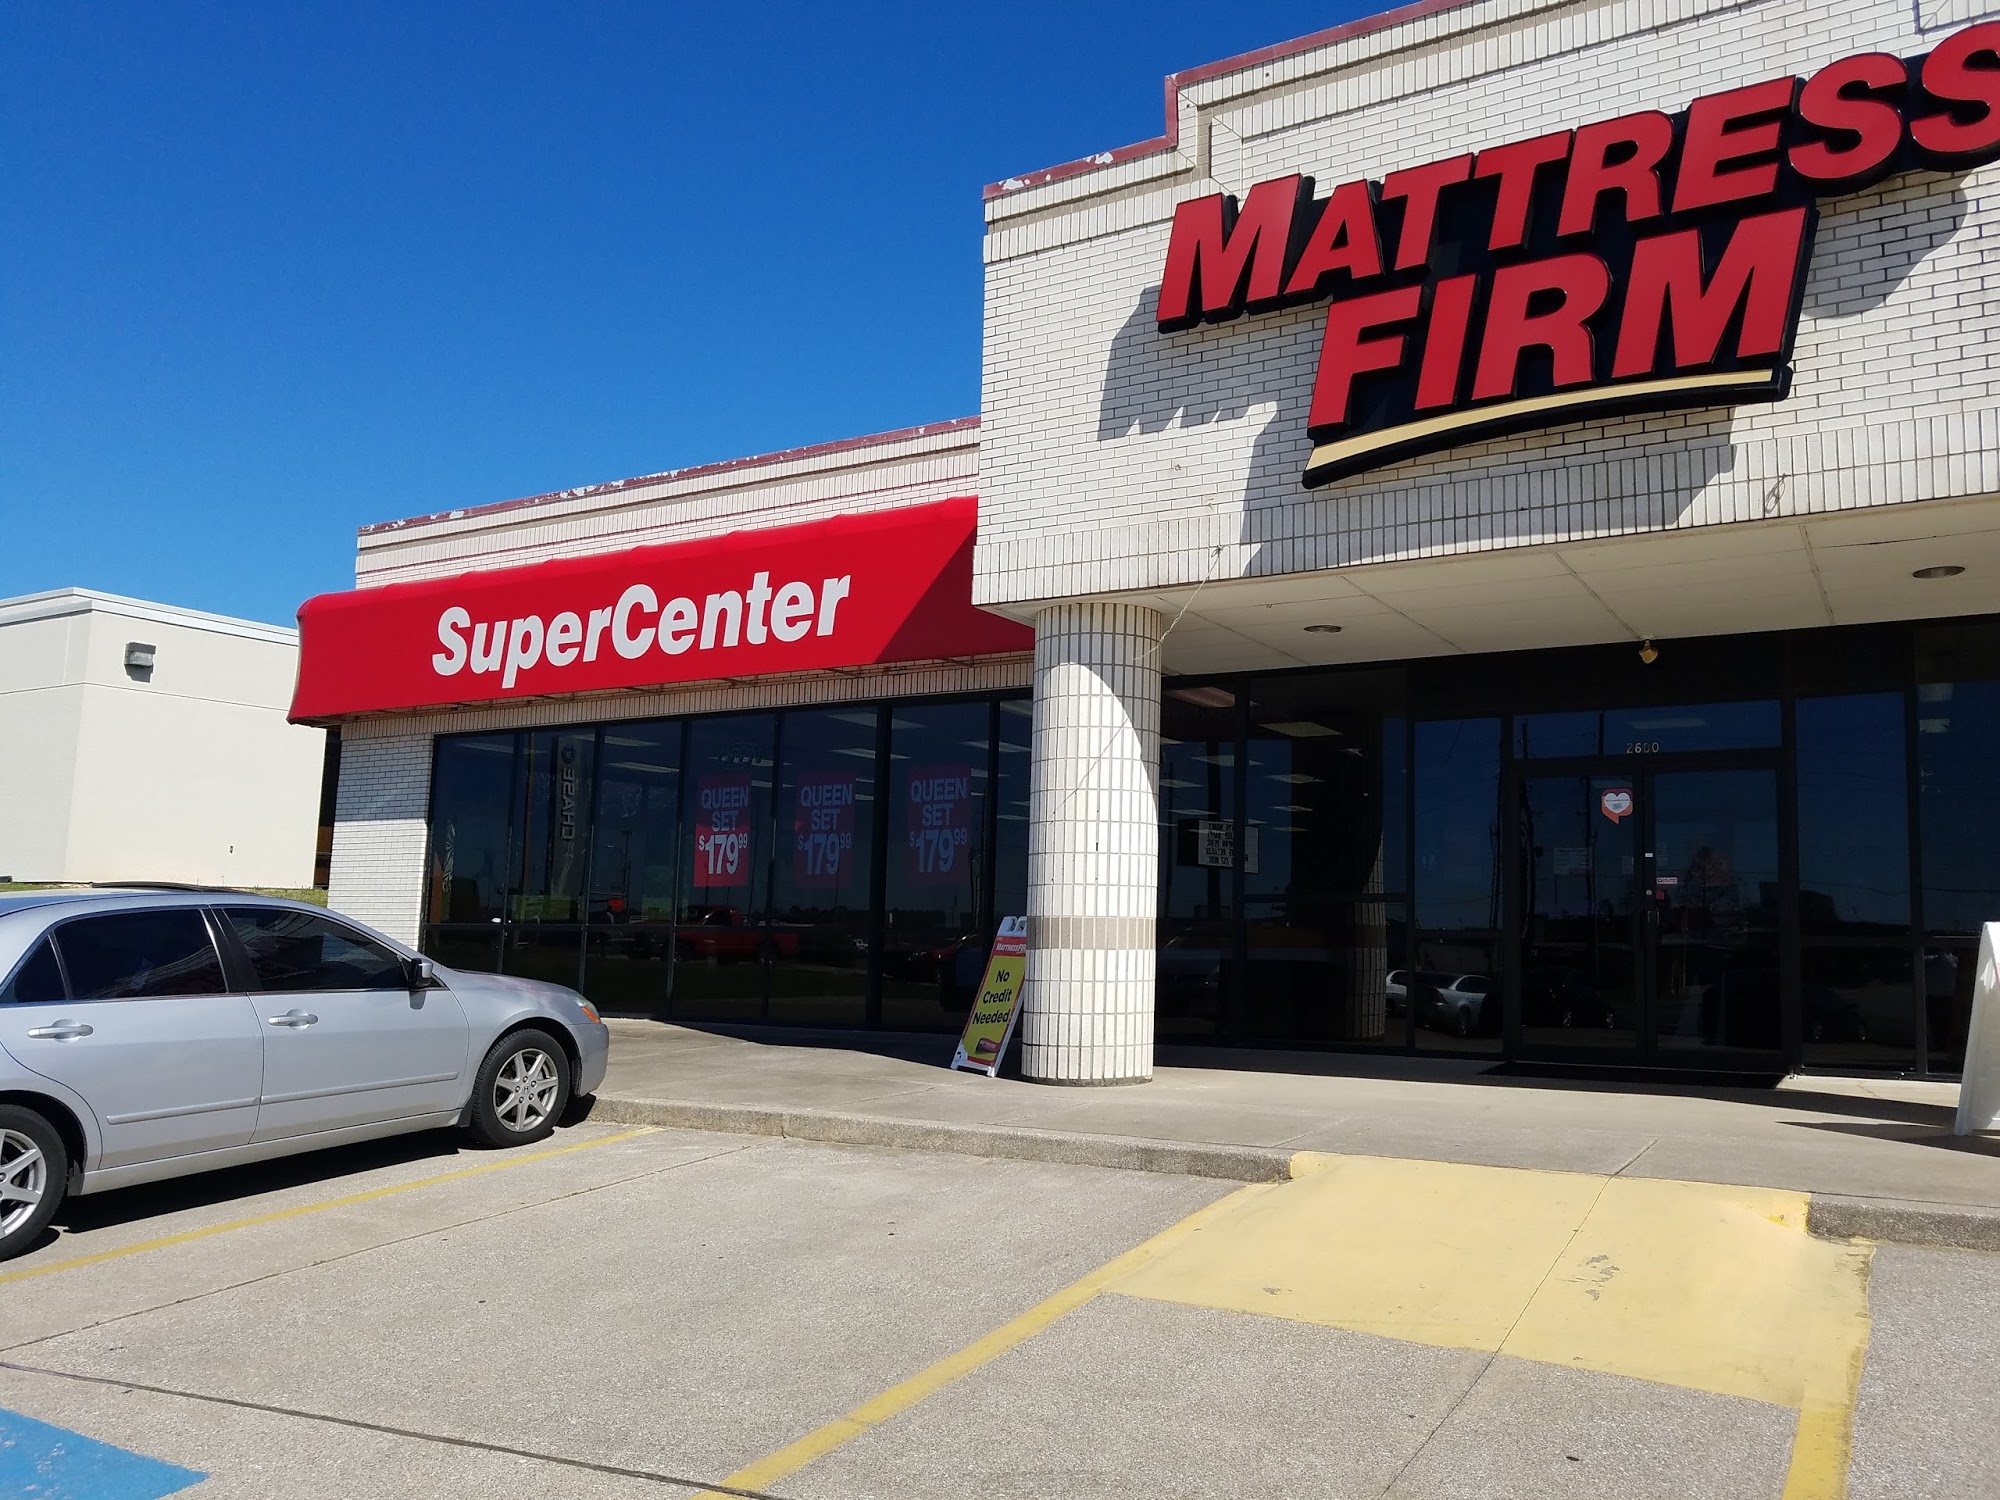 Mattress Firm Clearance Center Judson Road